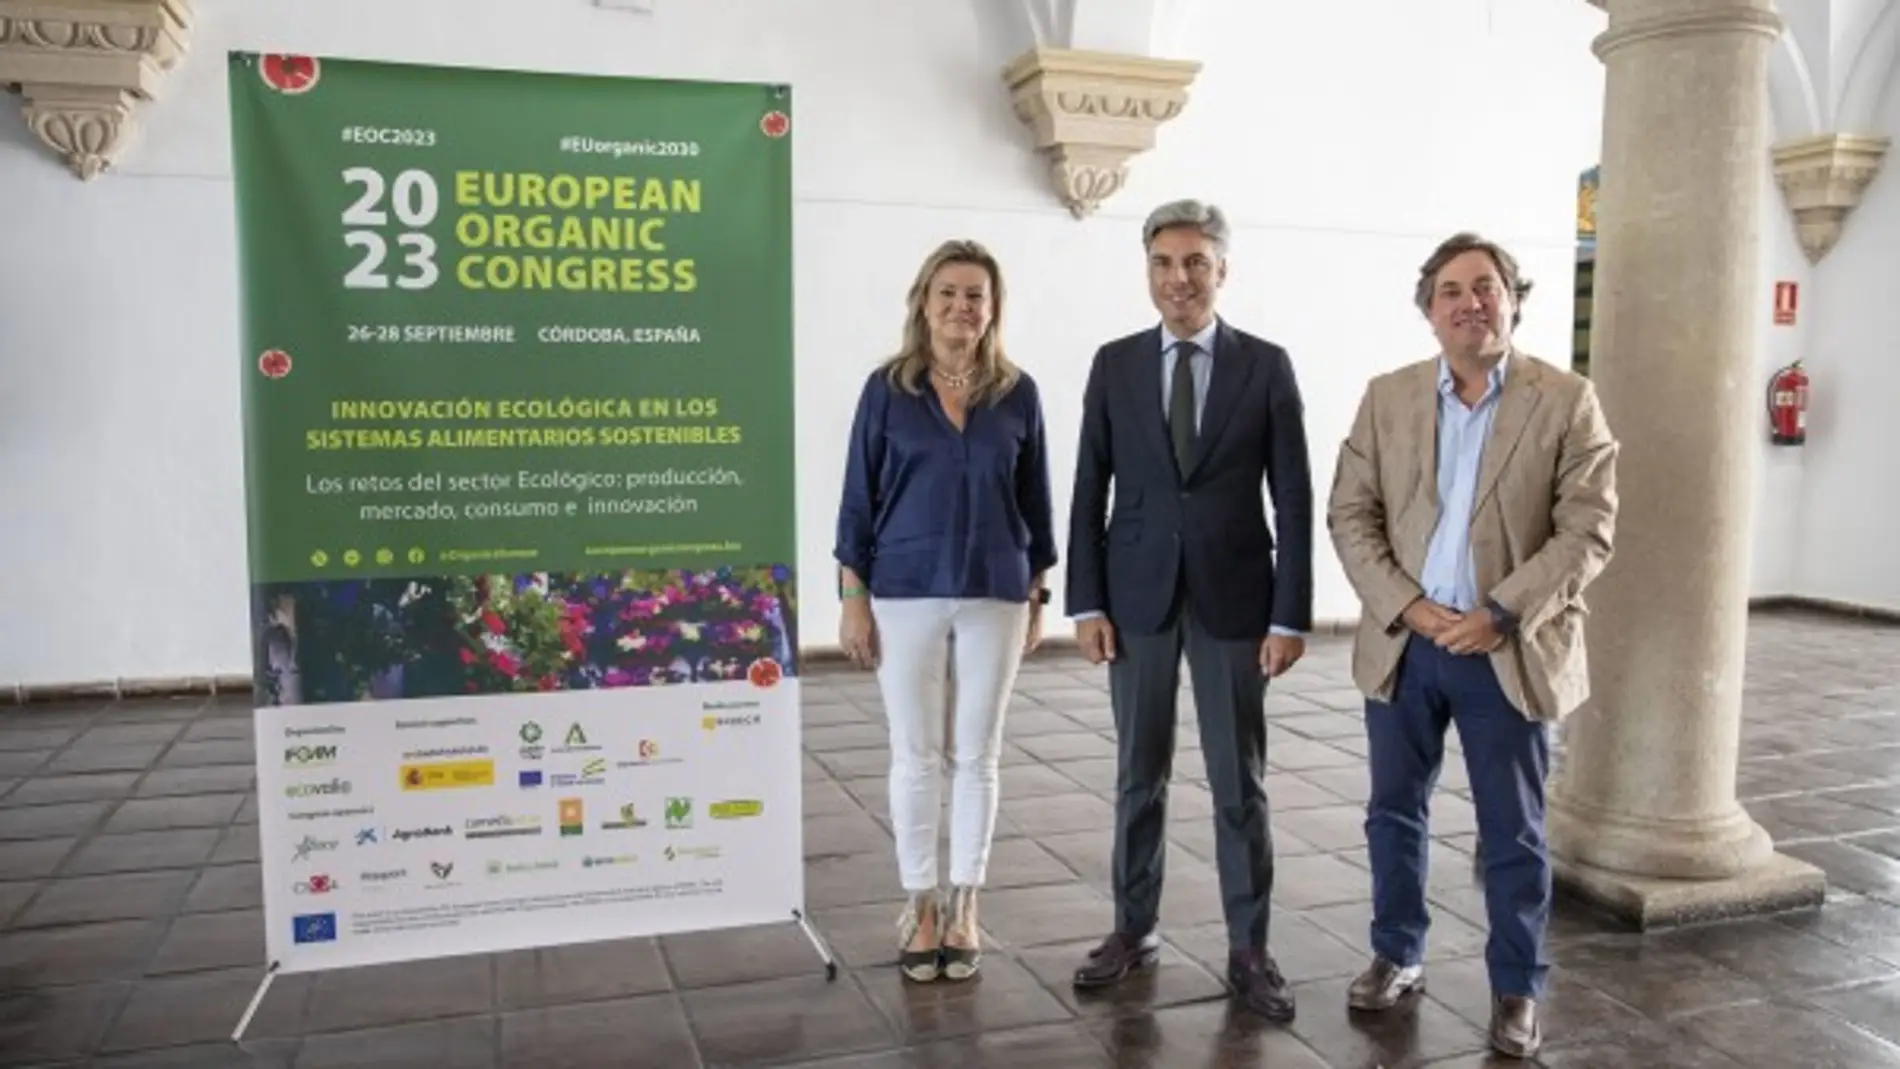 presentación del XVII Congreso Ecológico Europeo